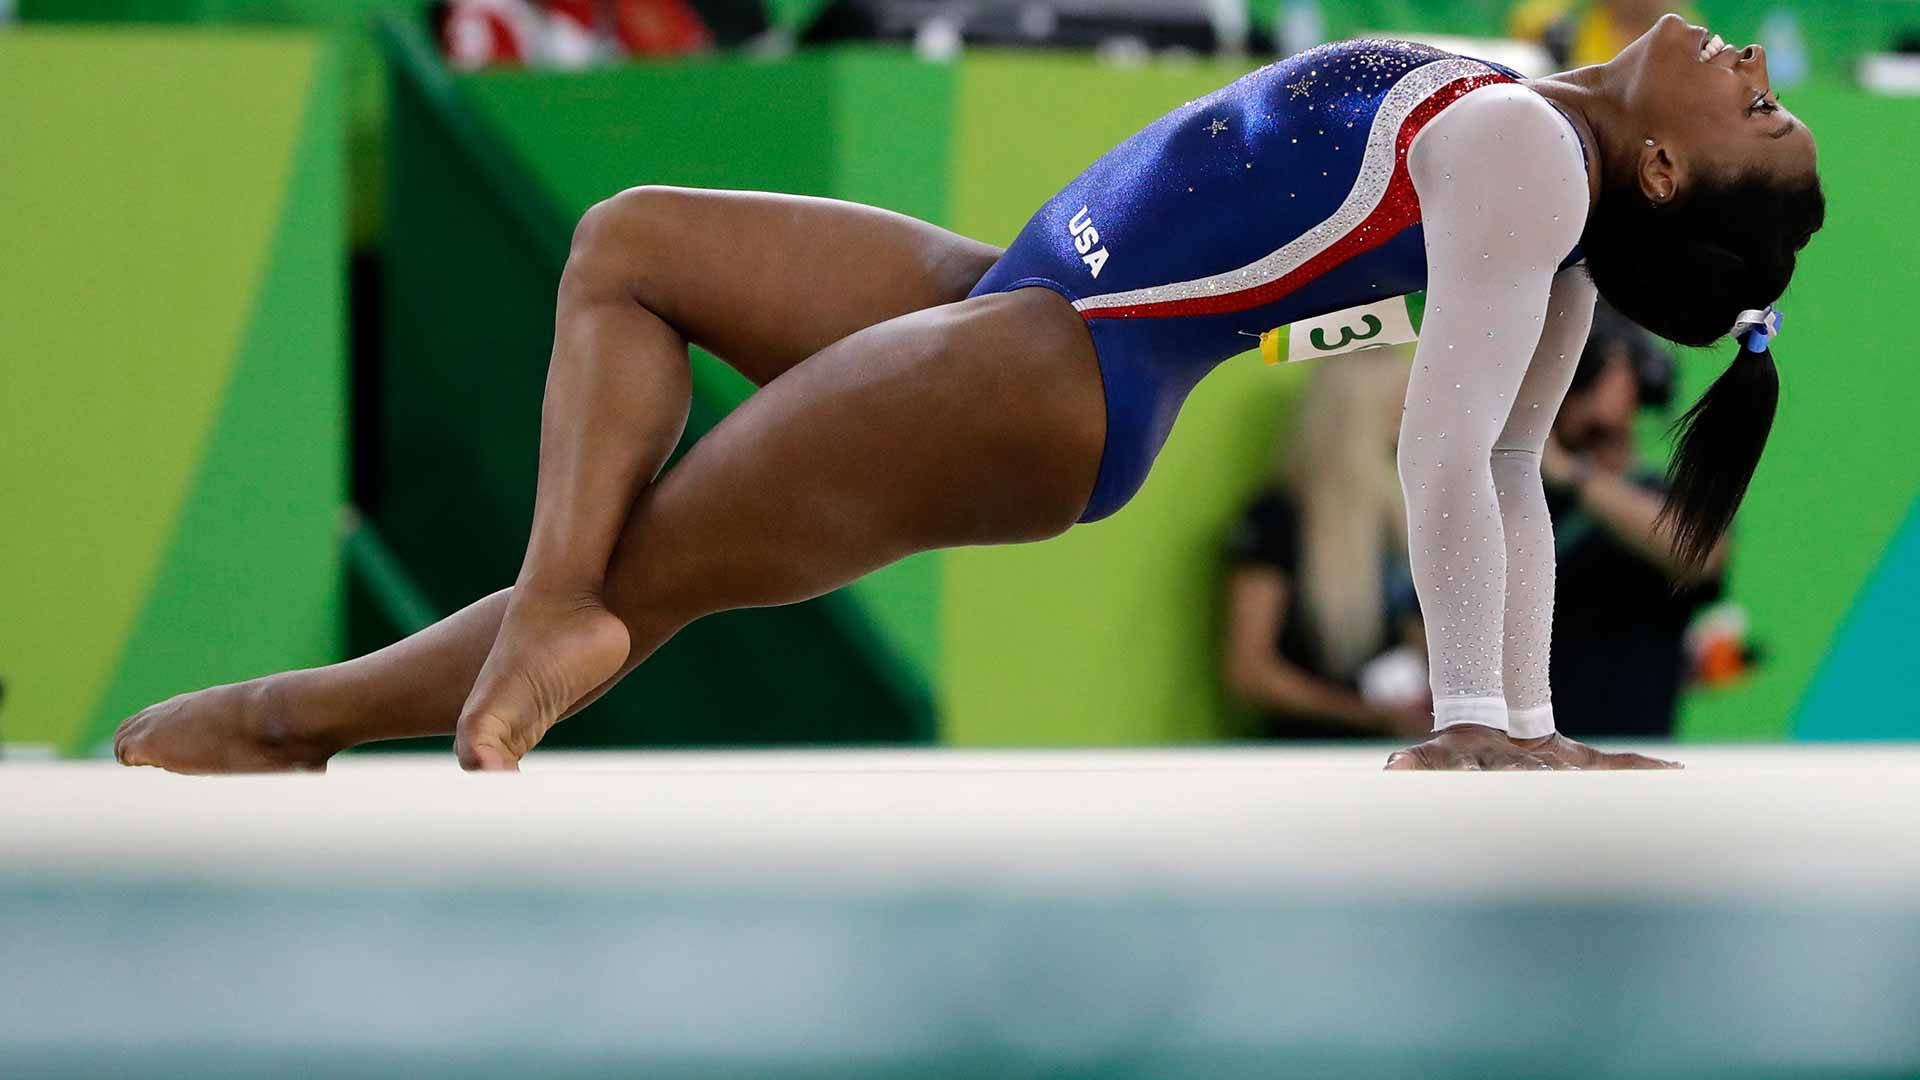 Lamedallista De Oro Olímpica Simone Biles En Los Campeonatos Mundiales De 2017. Fondo de pantalla